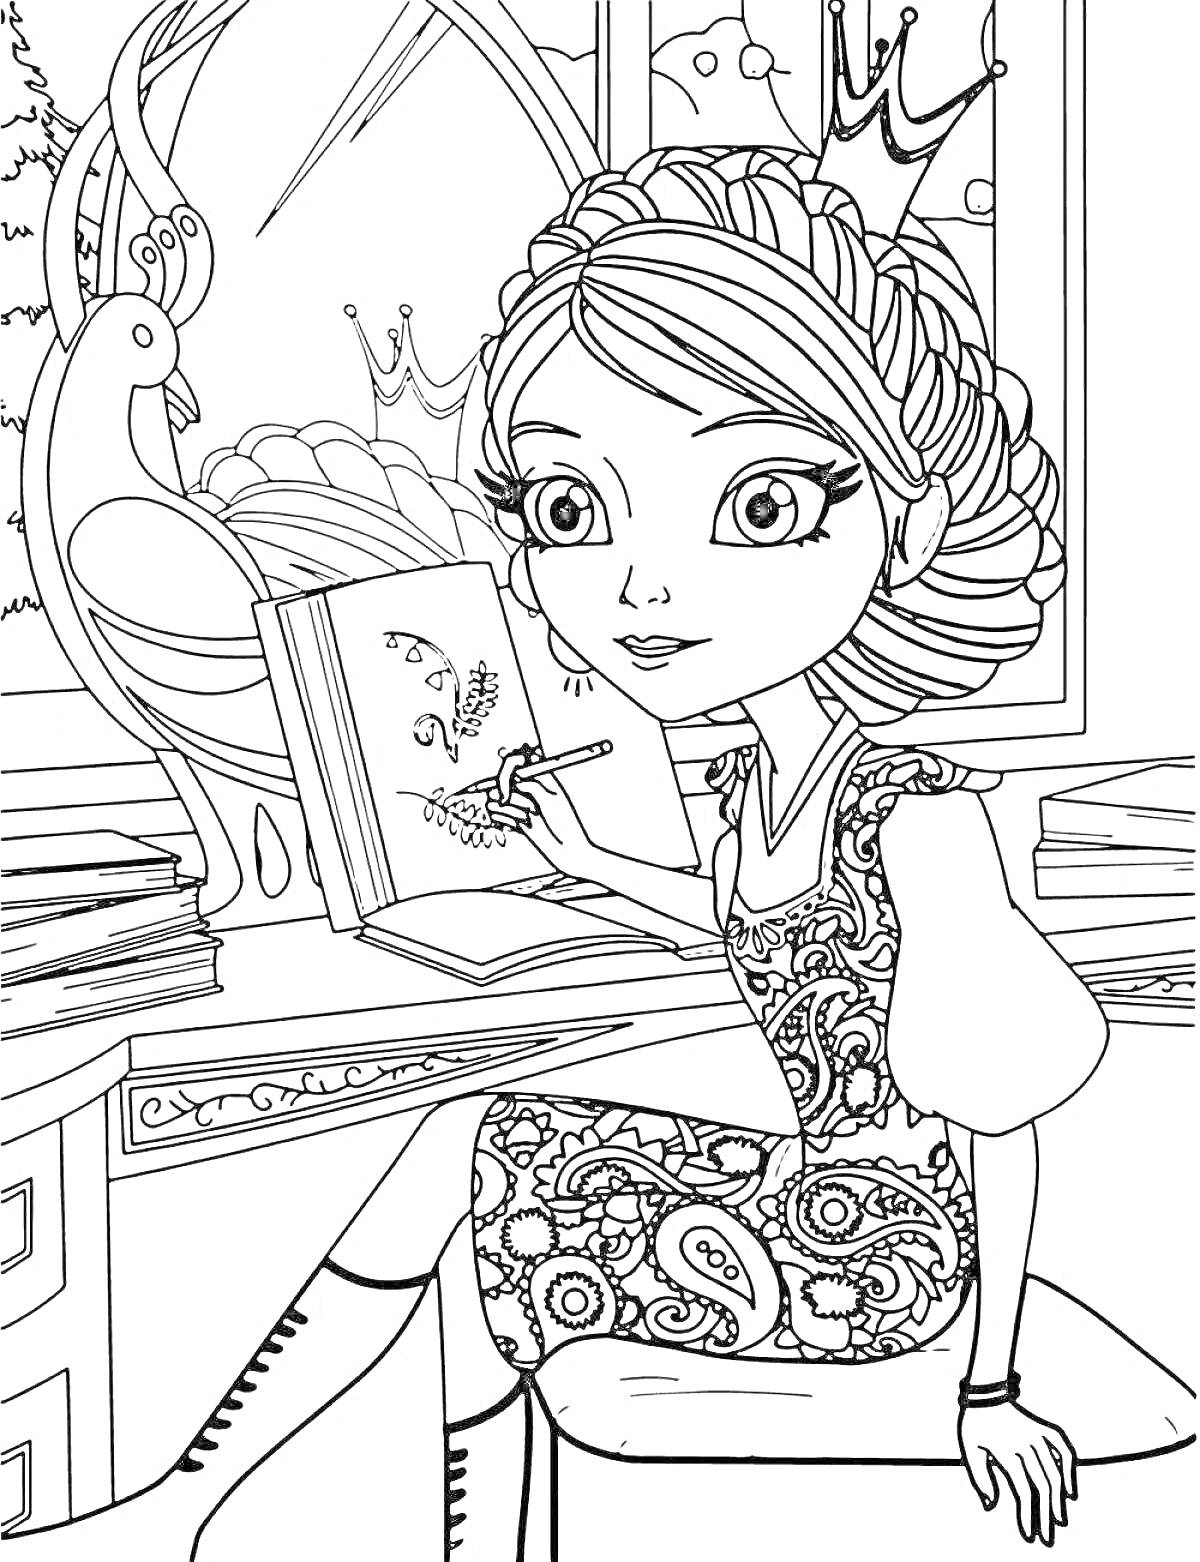 Раскраска Принцесса рисует в замке, вокруг книжный шкаф, окно с видом на природу и павлин